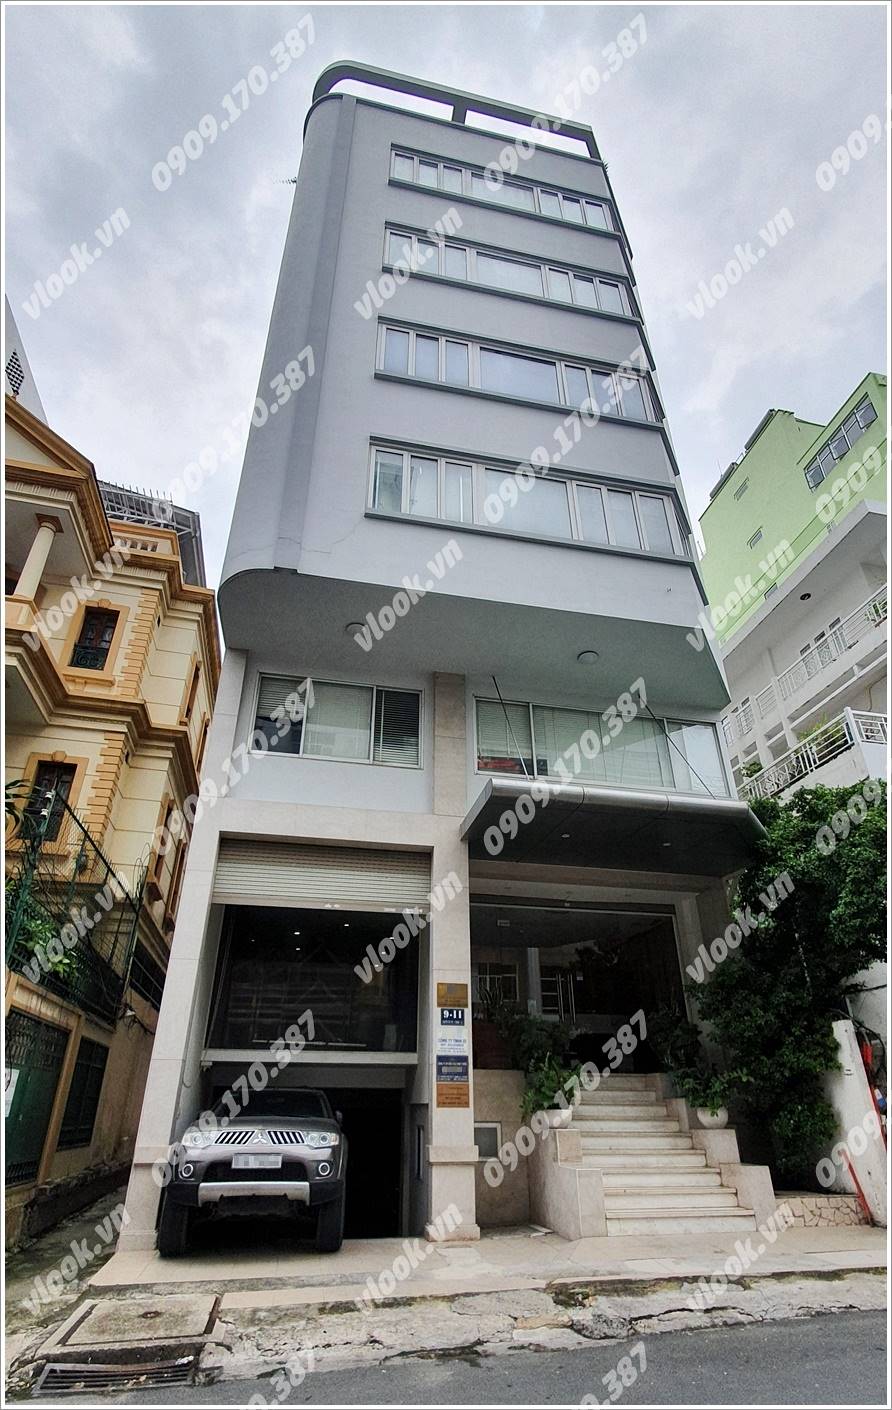 Cao ốc cho thuê văn phòng Tòa nhà 9-11 Nguyễn Văn Đậu, Quận 1, TPHCM - vlook.vn